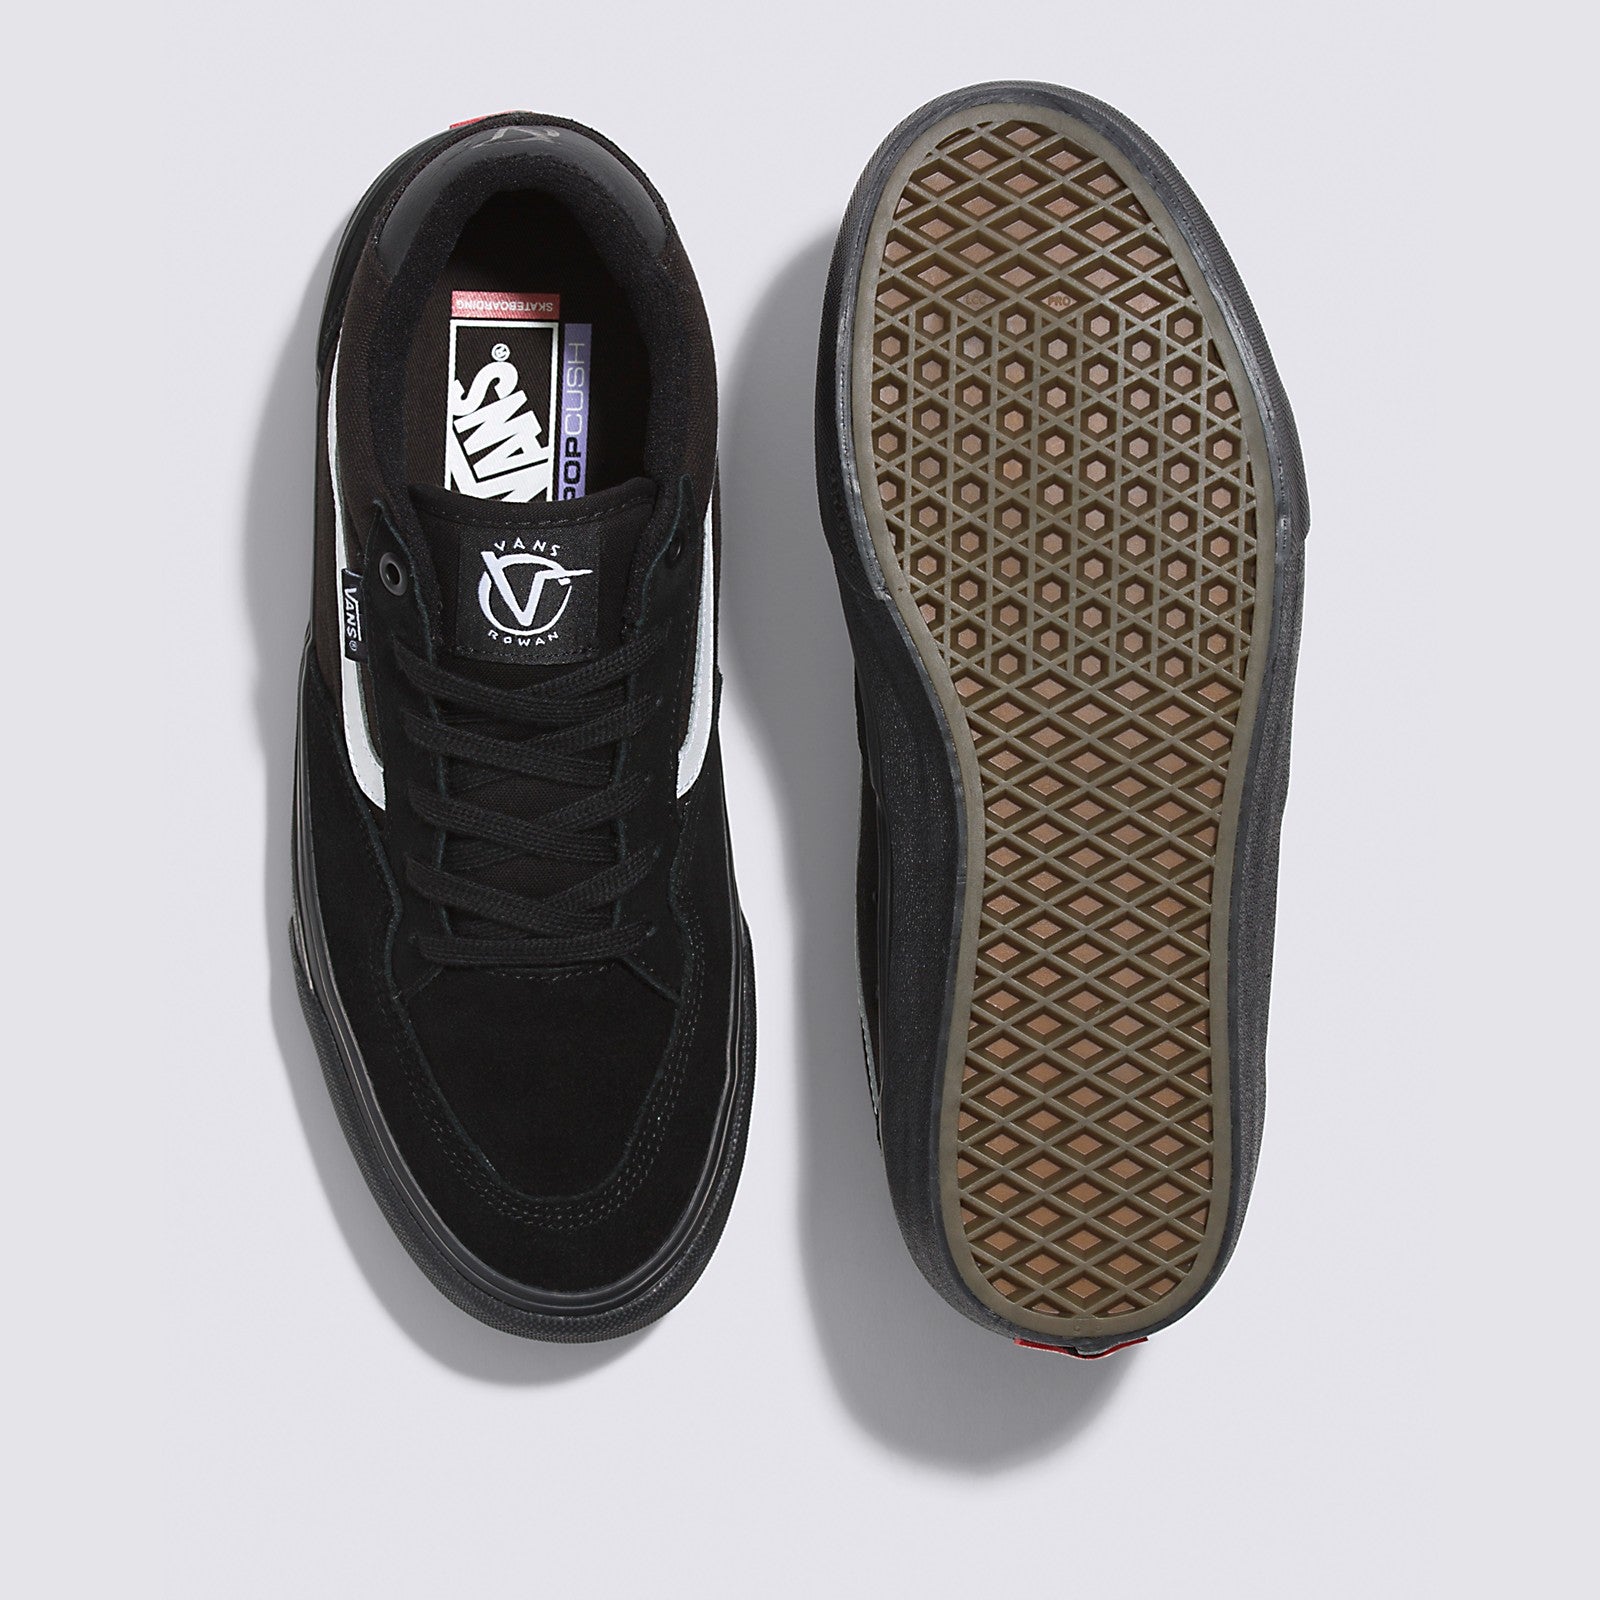 Black/Black/White Rowan Vans Skateboard Shoe Top/Bottom